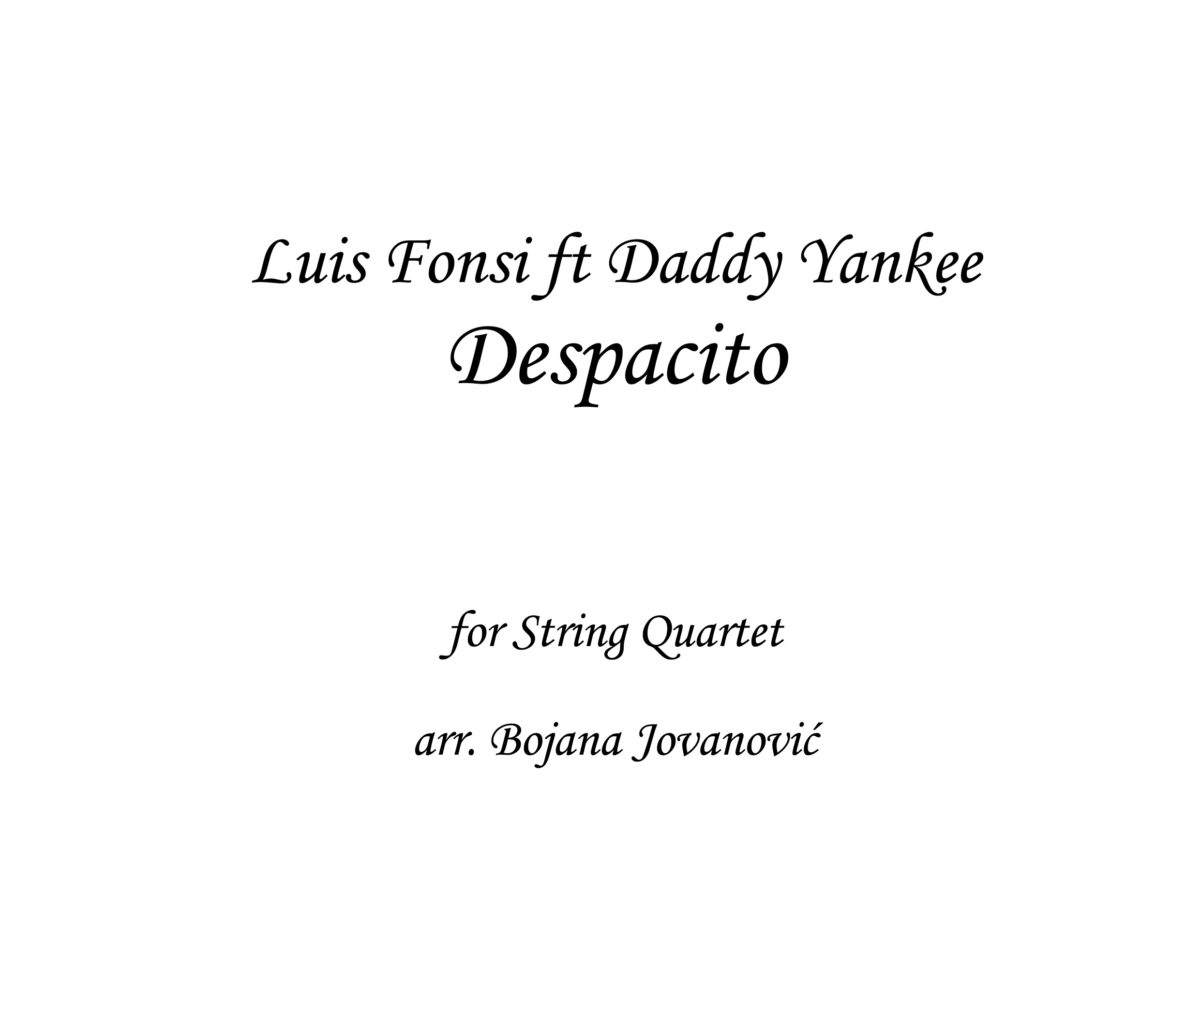 Despacito Luis Fonsi Sheet music